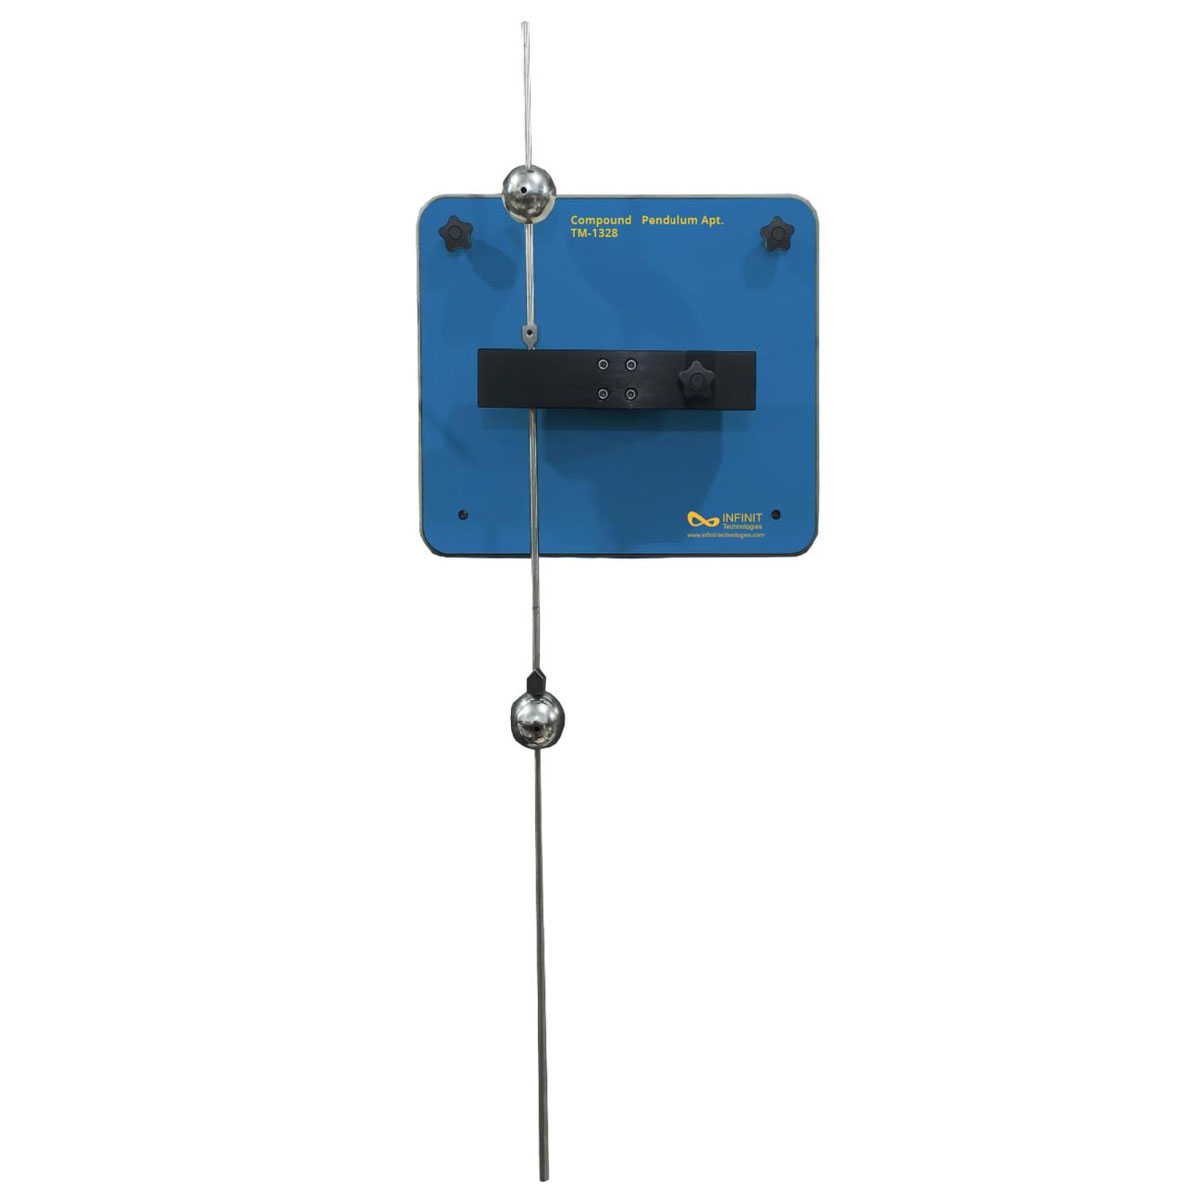 TM-1328 Compound Pendulum Apparatus